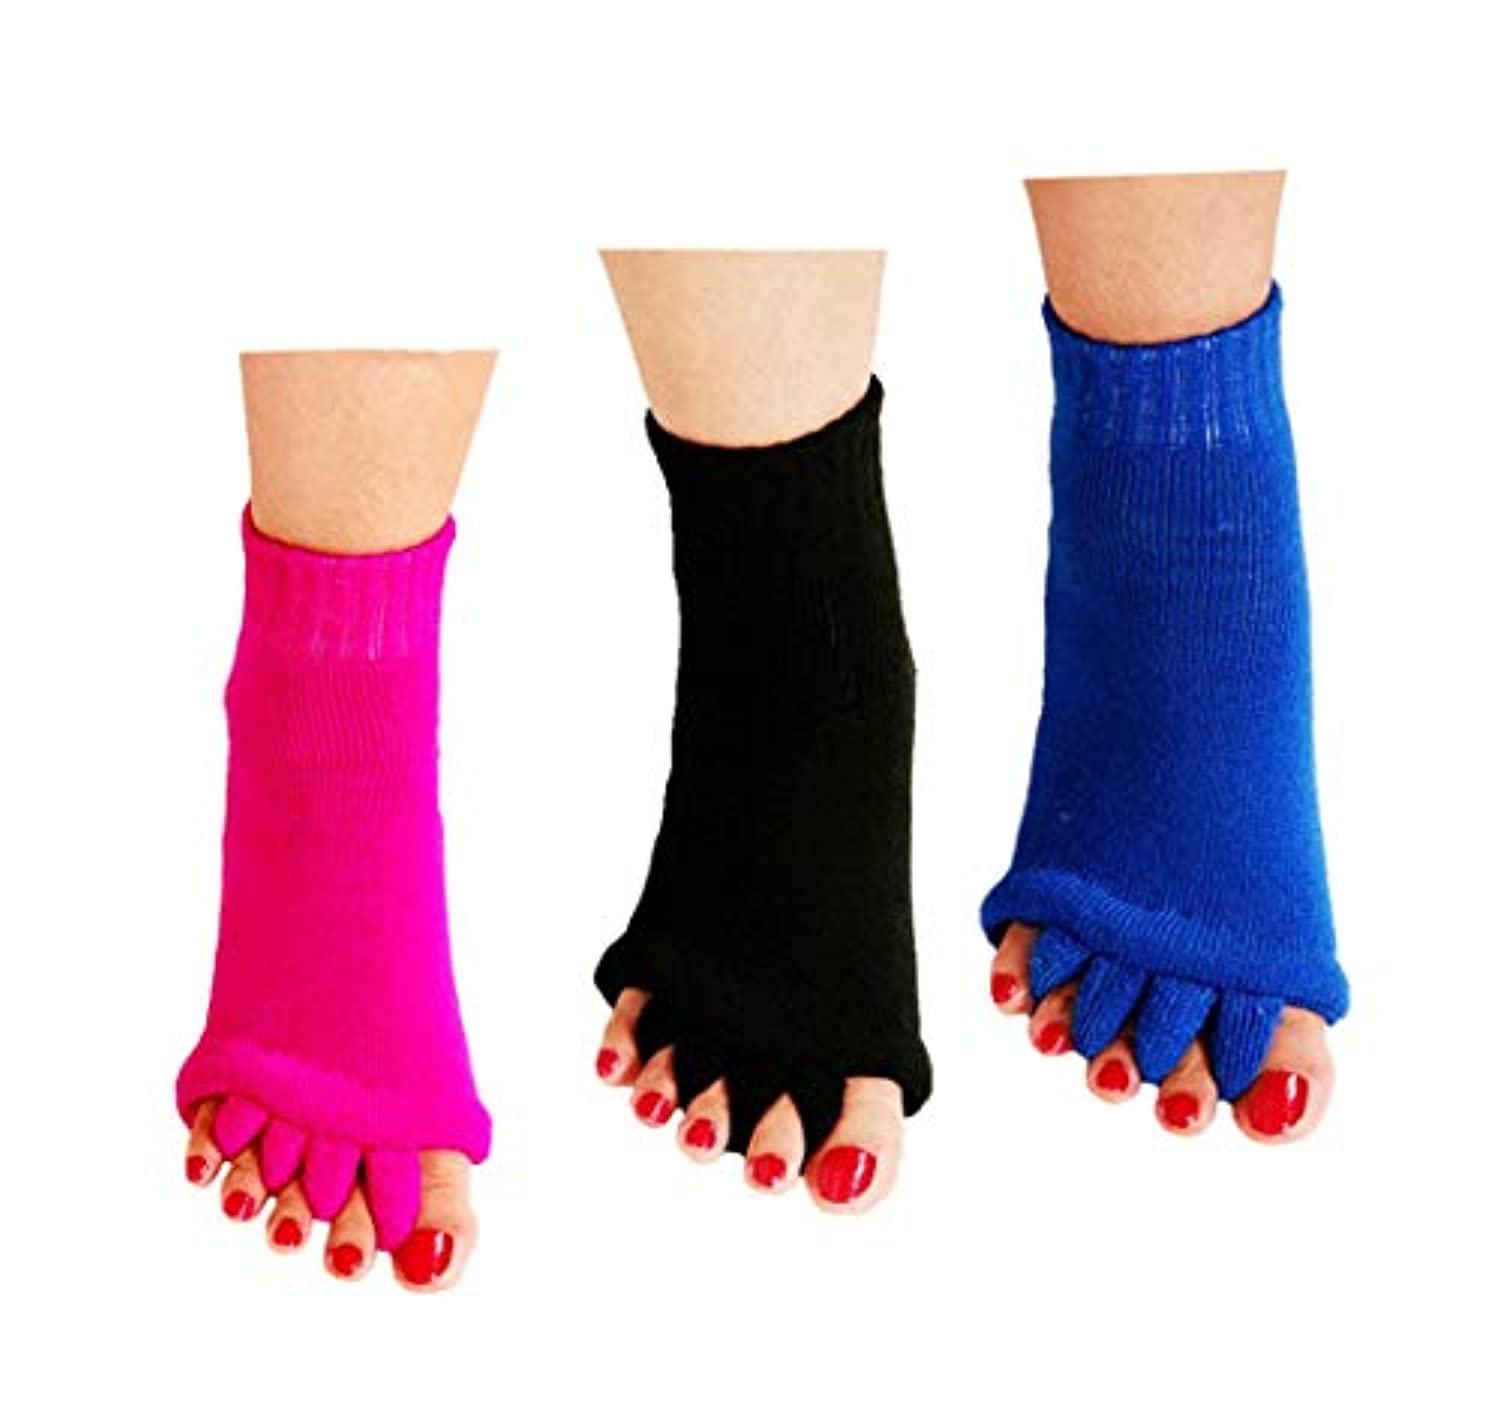 ReachTop - Calcetines separadores para dedos de los pies, 3 pares